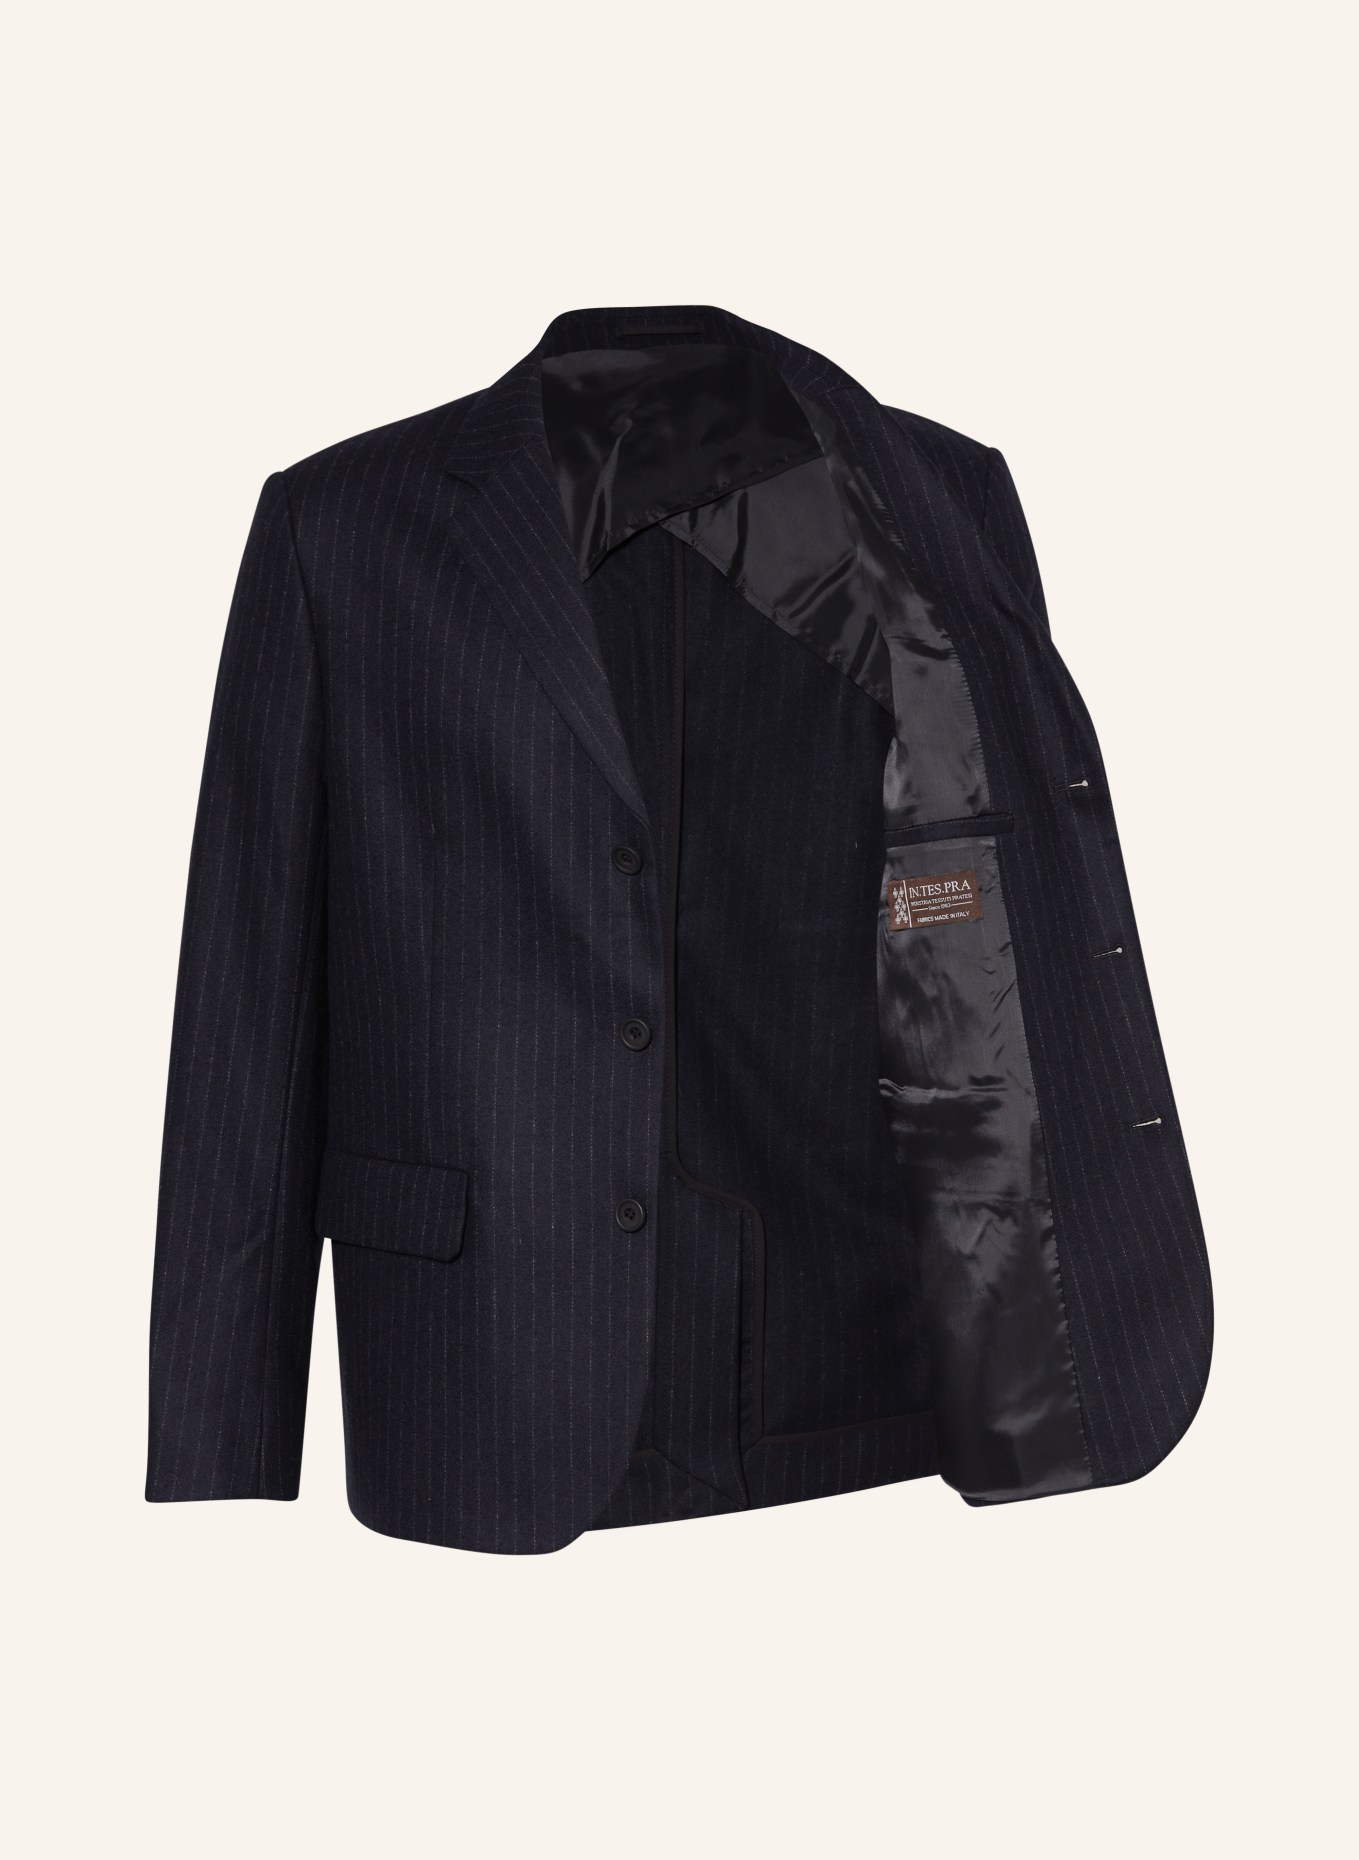 COS Tailored jacket regular fit, Color: 001 Blue Dark (Image 5)